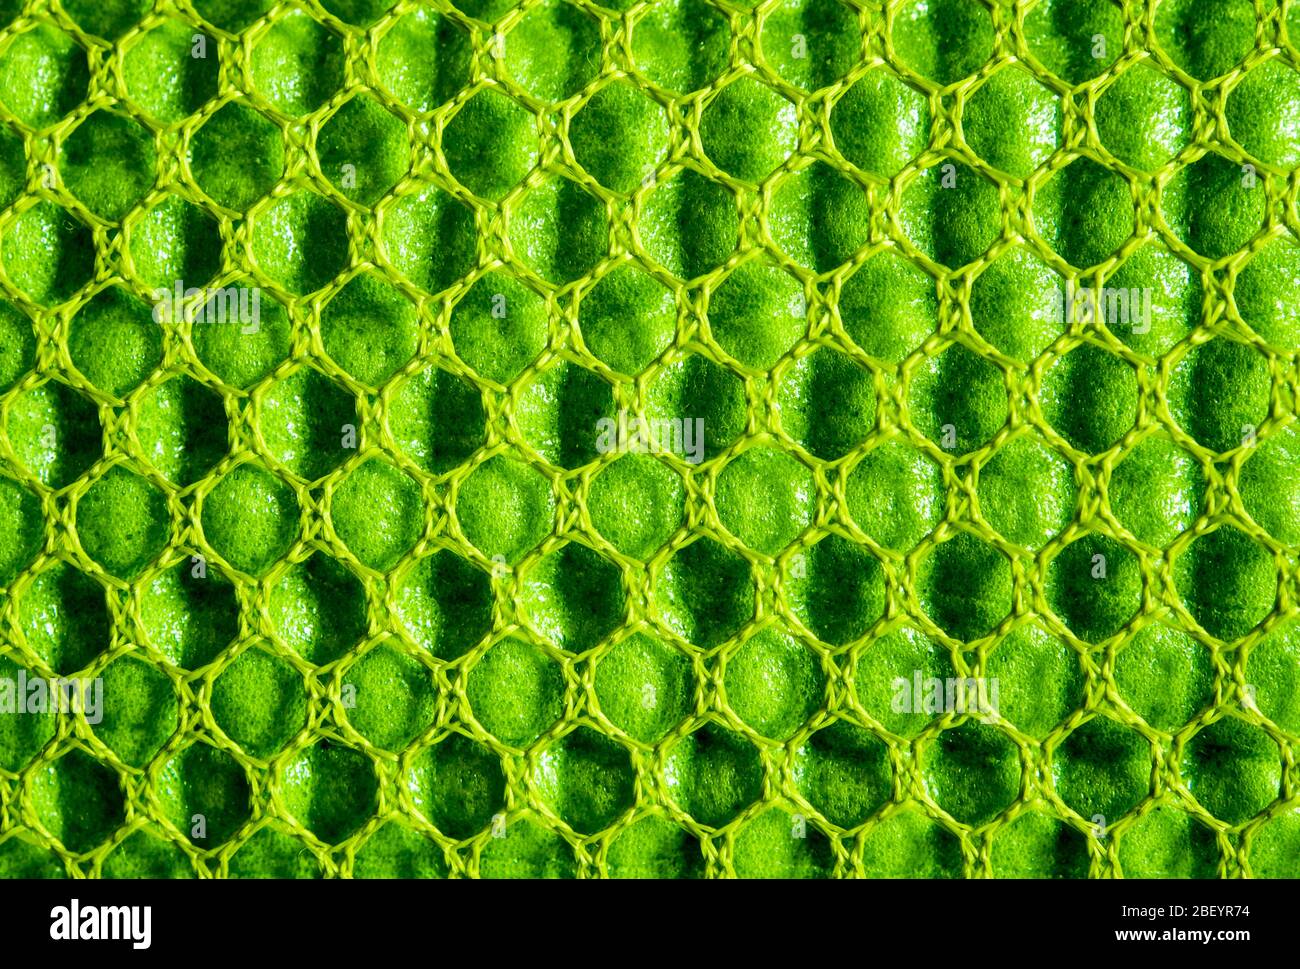 Schwamm-Gummi-Schaumstoff-Gewebe der Matte für Yoga-Aktivität in der Nylon- Netztasche Stockfotografie - Alamy